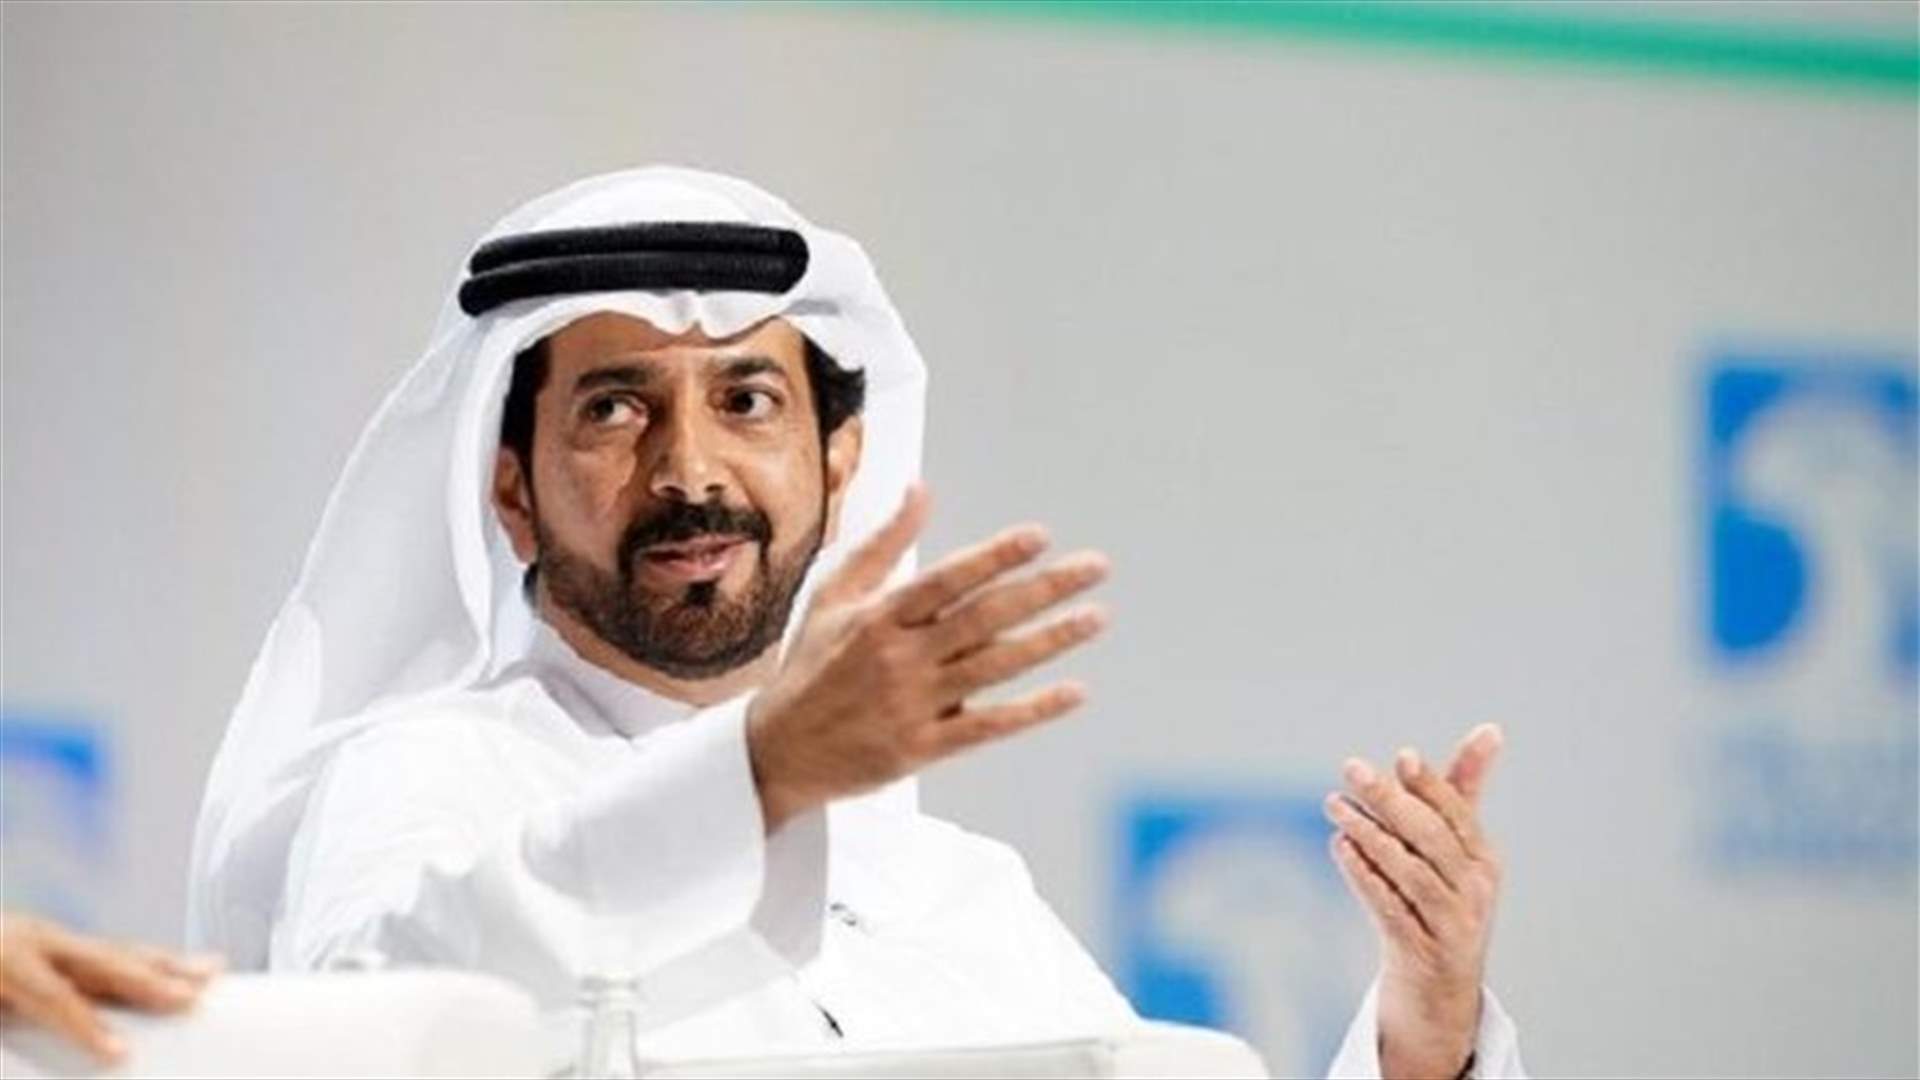 الإمارات والسعودية تستخدمان عملة رقمية في عمليات التسوية